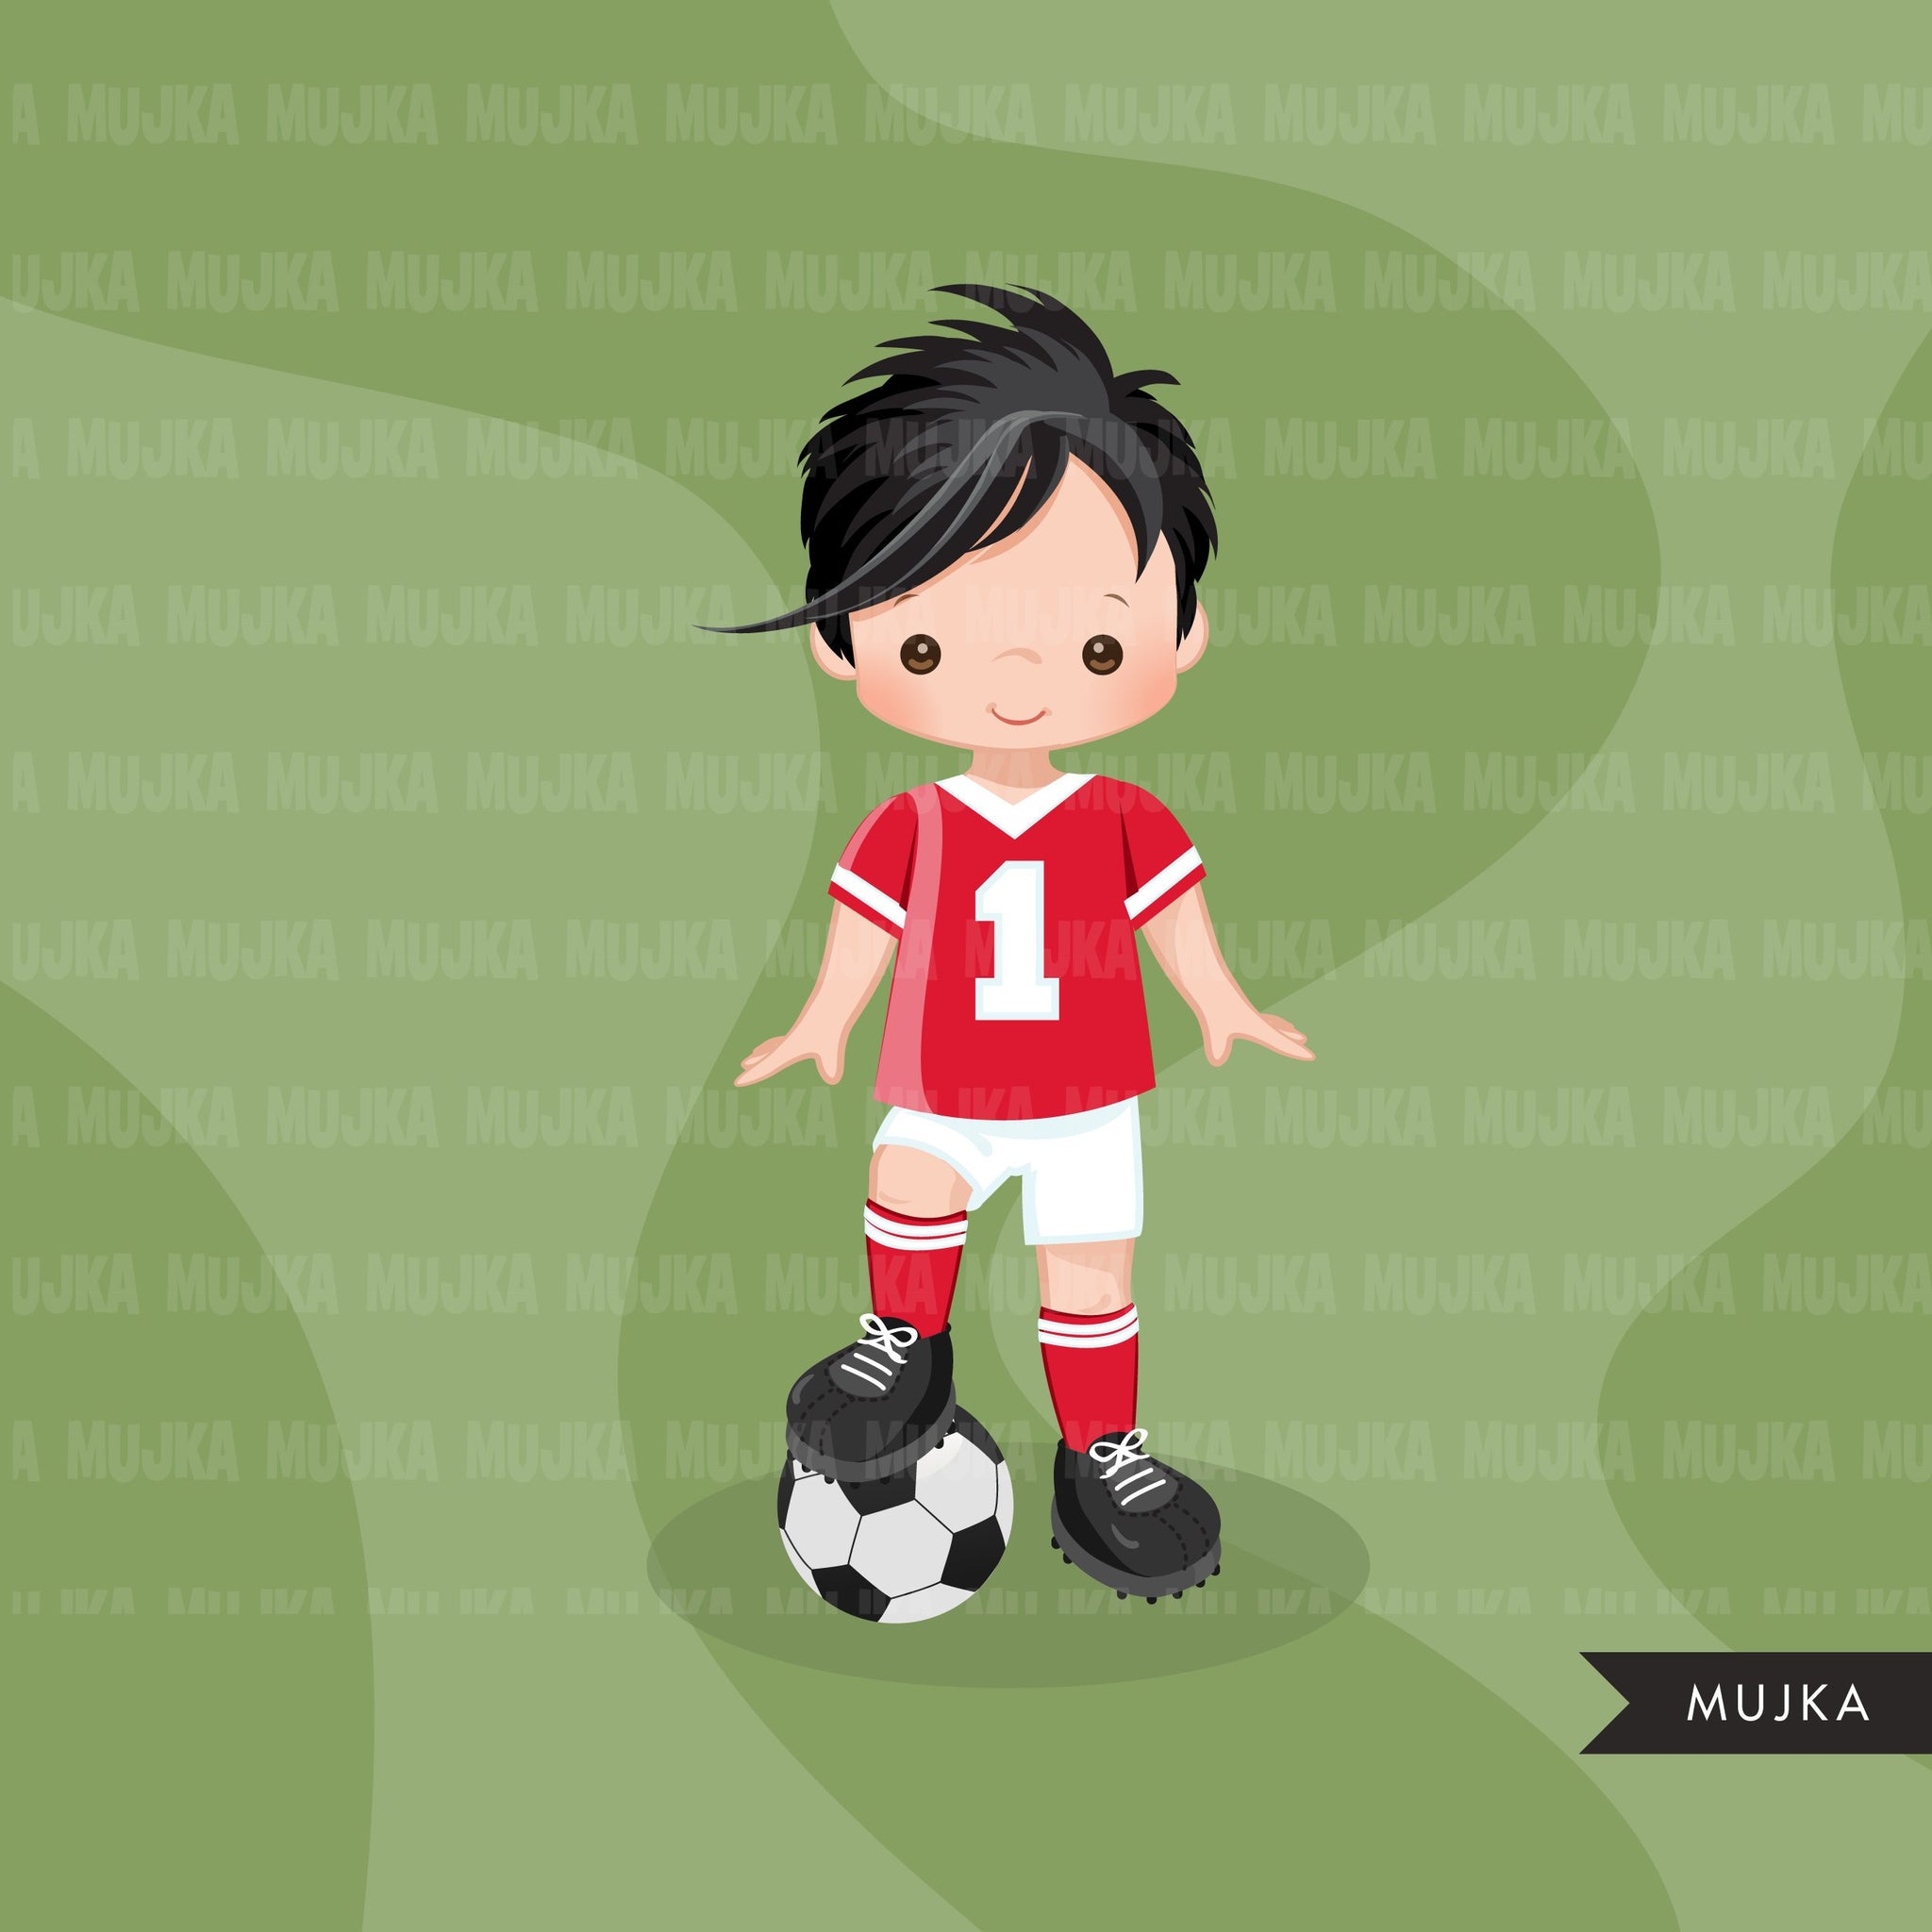 Clipart de fútbol, ​​niño con camiseta roja y blanca